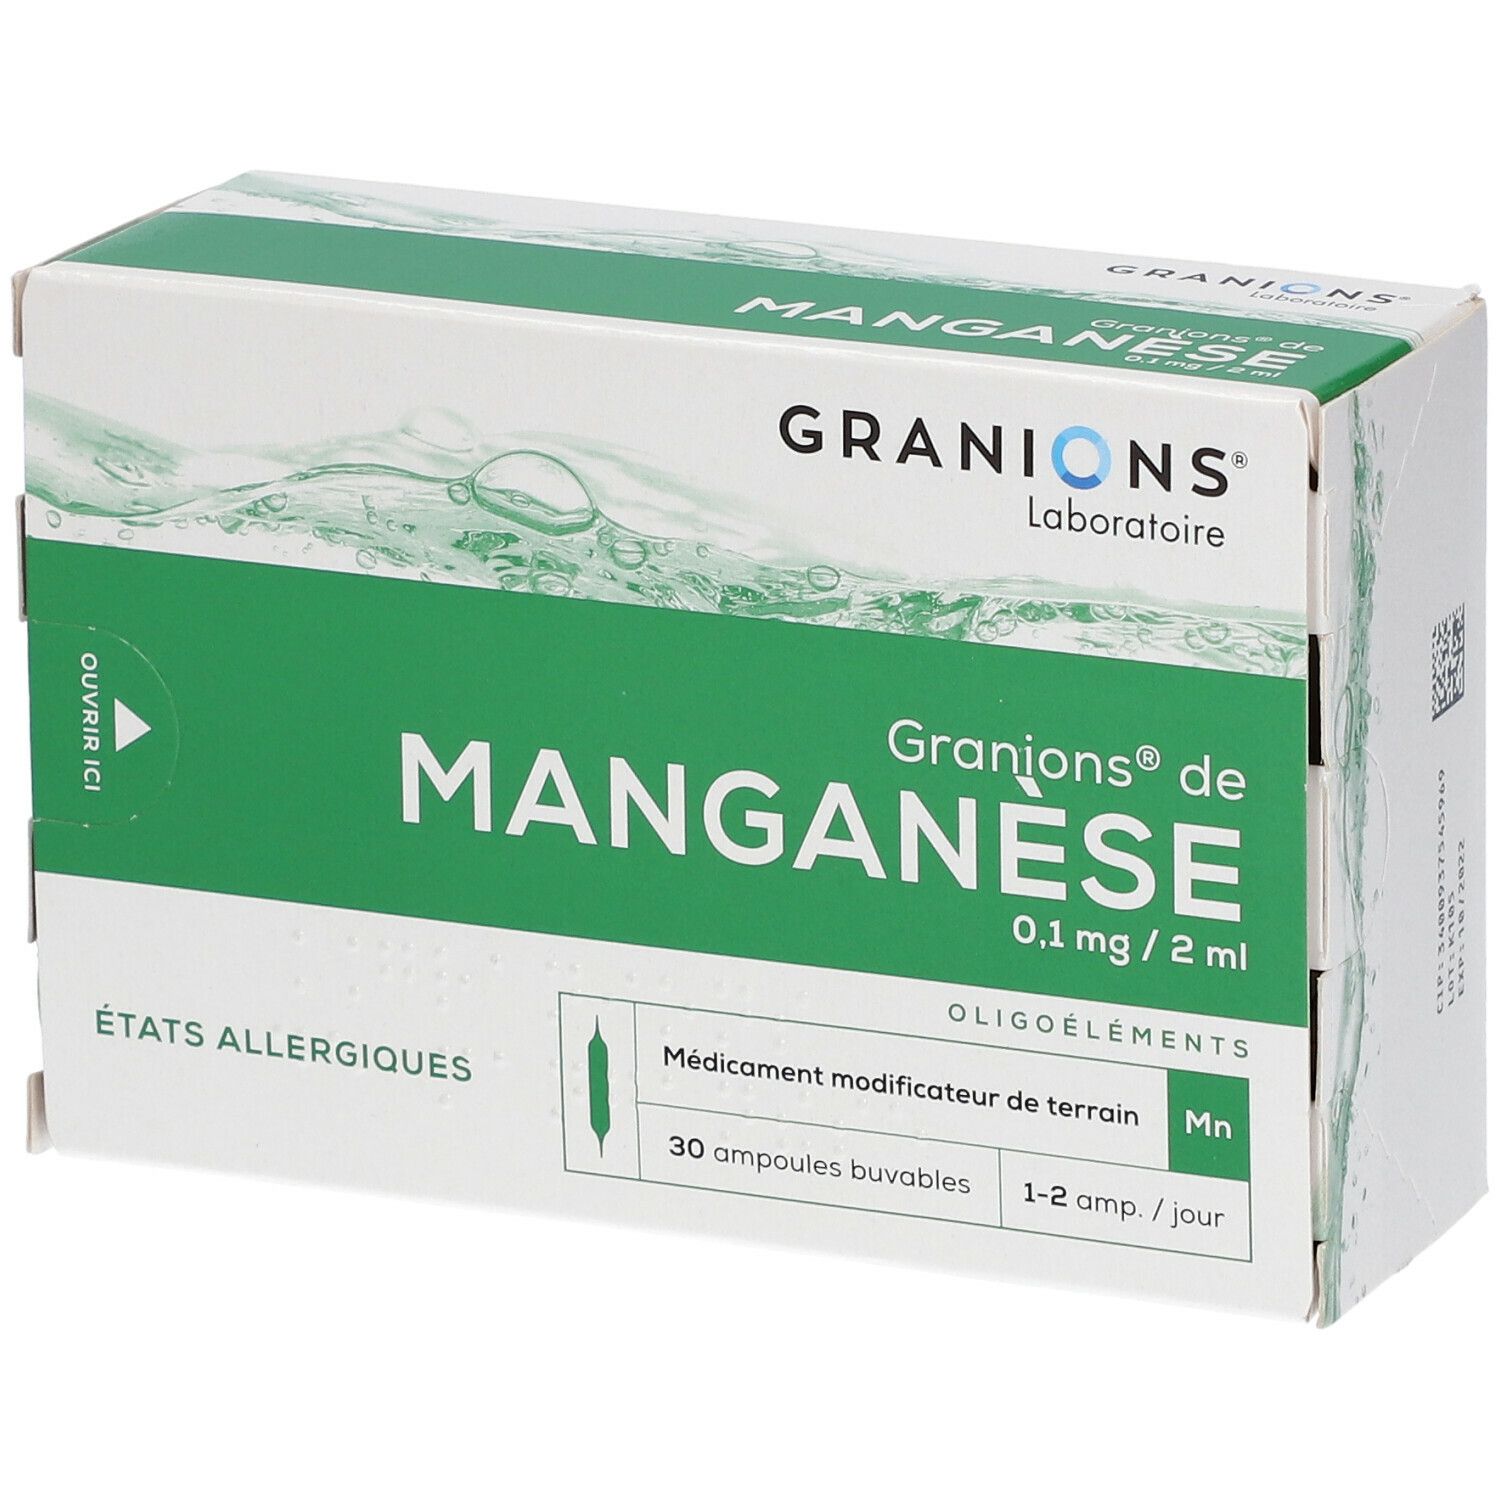 Granions® de Manganèse